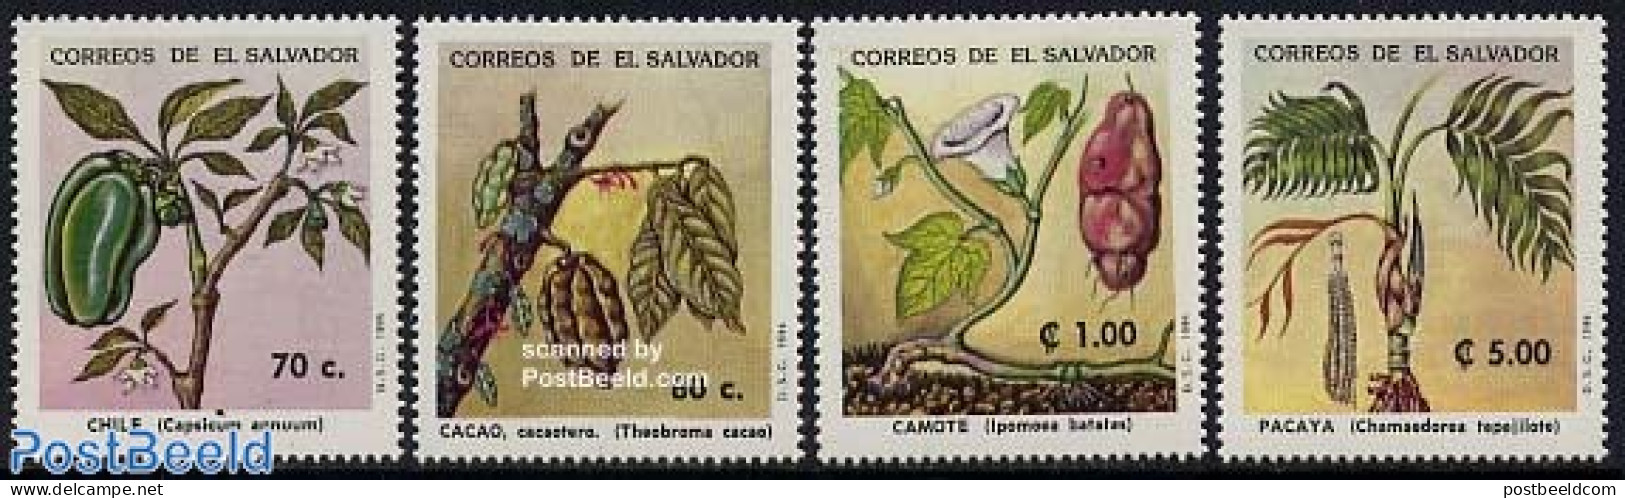 El Salvador 1994 Usefull Plants 4v, Mint NH, Nature - Flowers & Plants - El Salvador